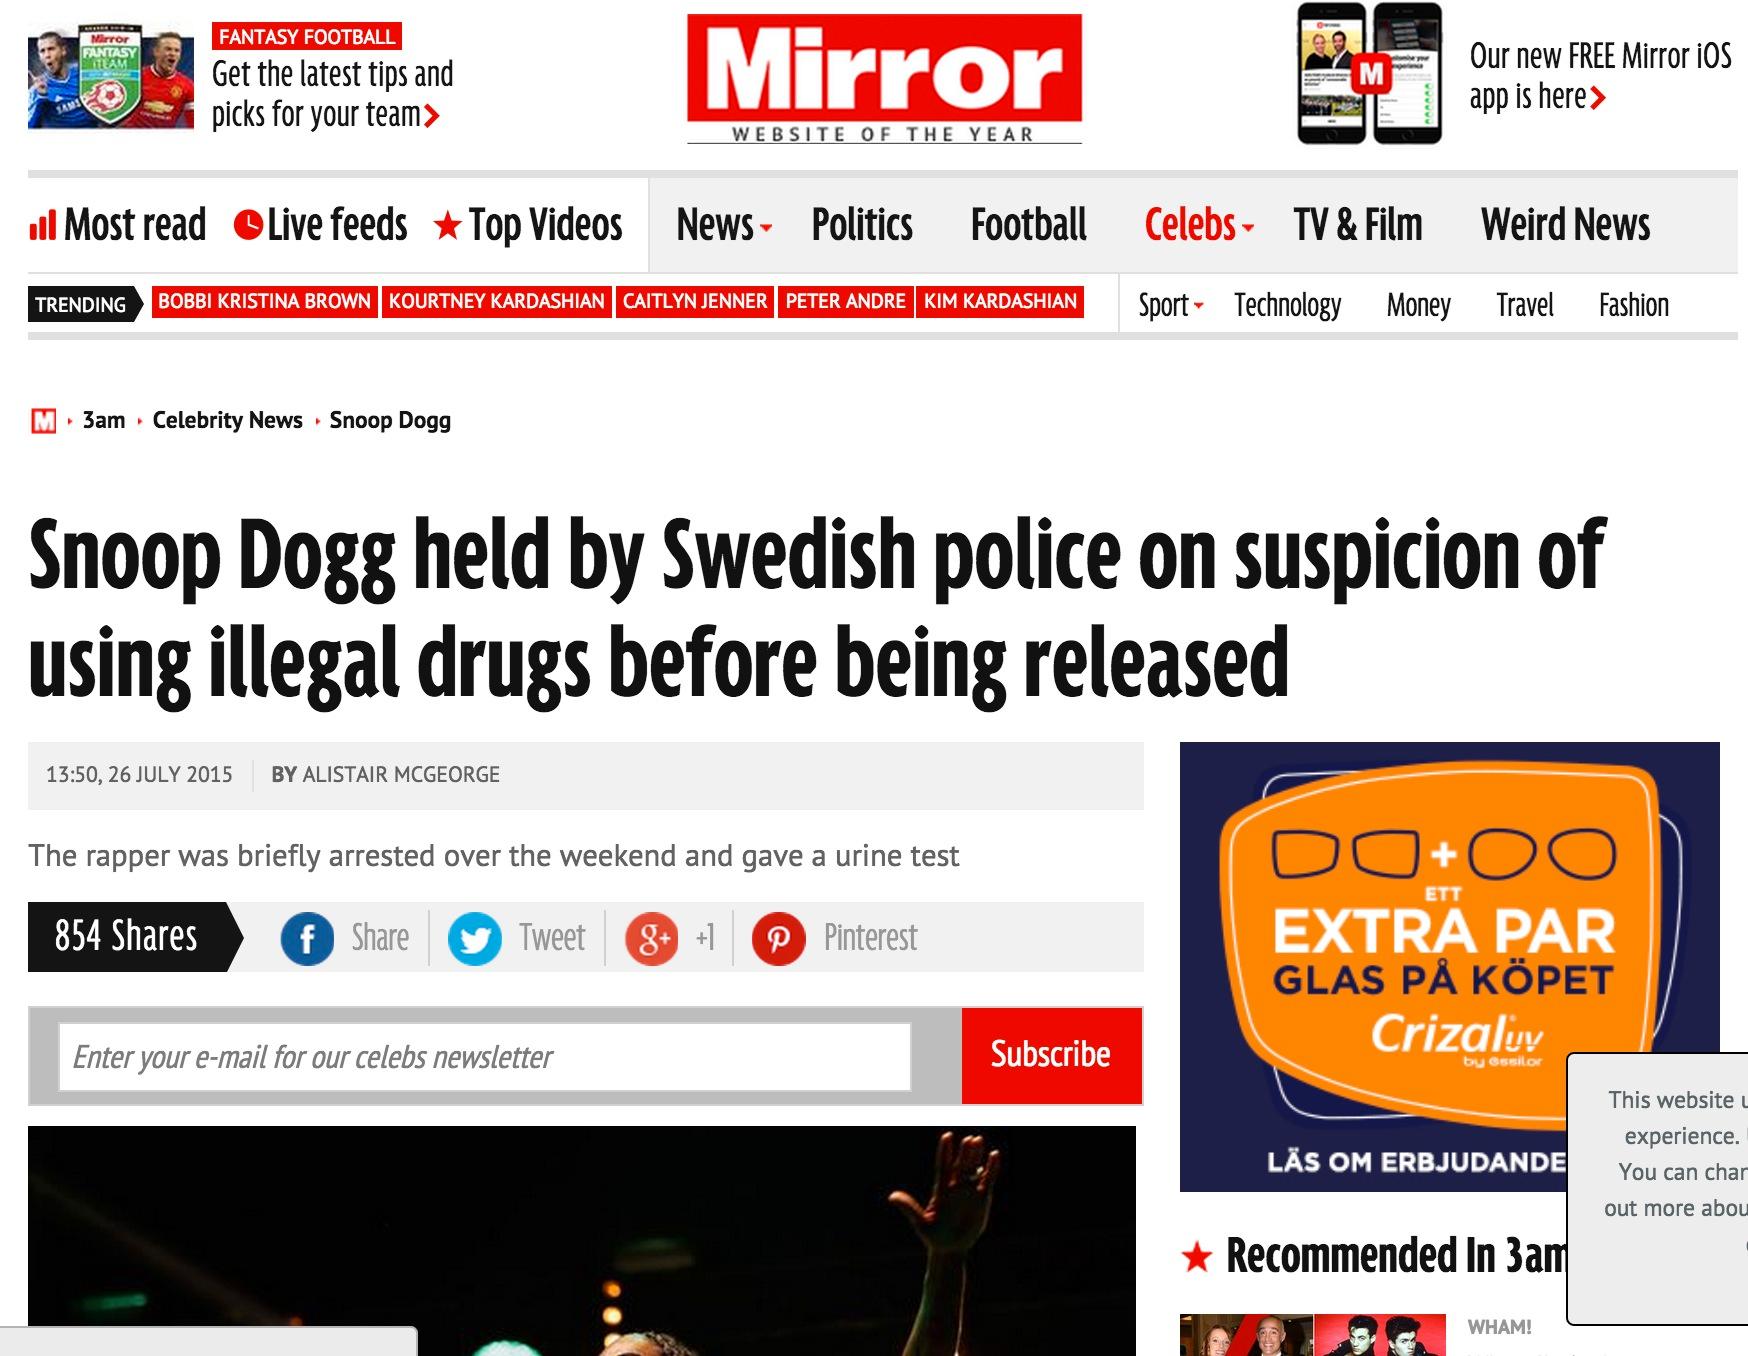 Mirror Snoop Dogg tagen av svensk polis misstänkt för användning av illegala droger och sen släppt